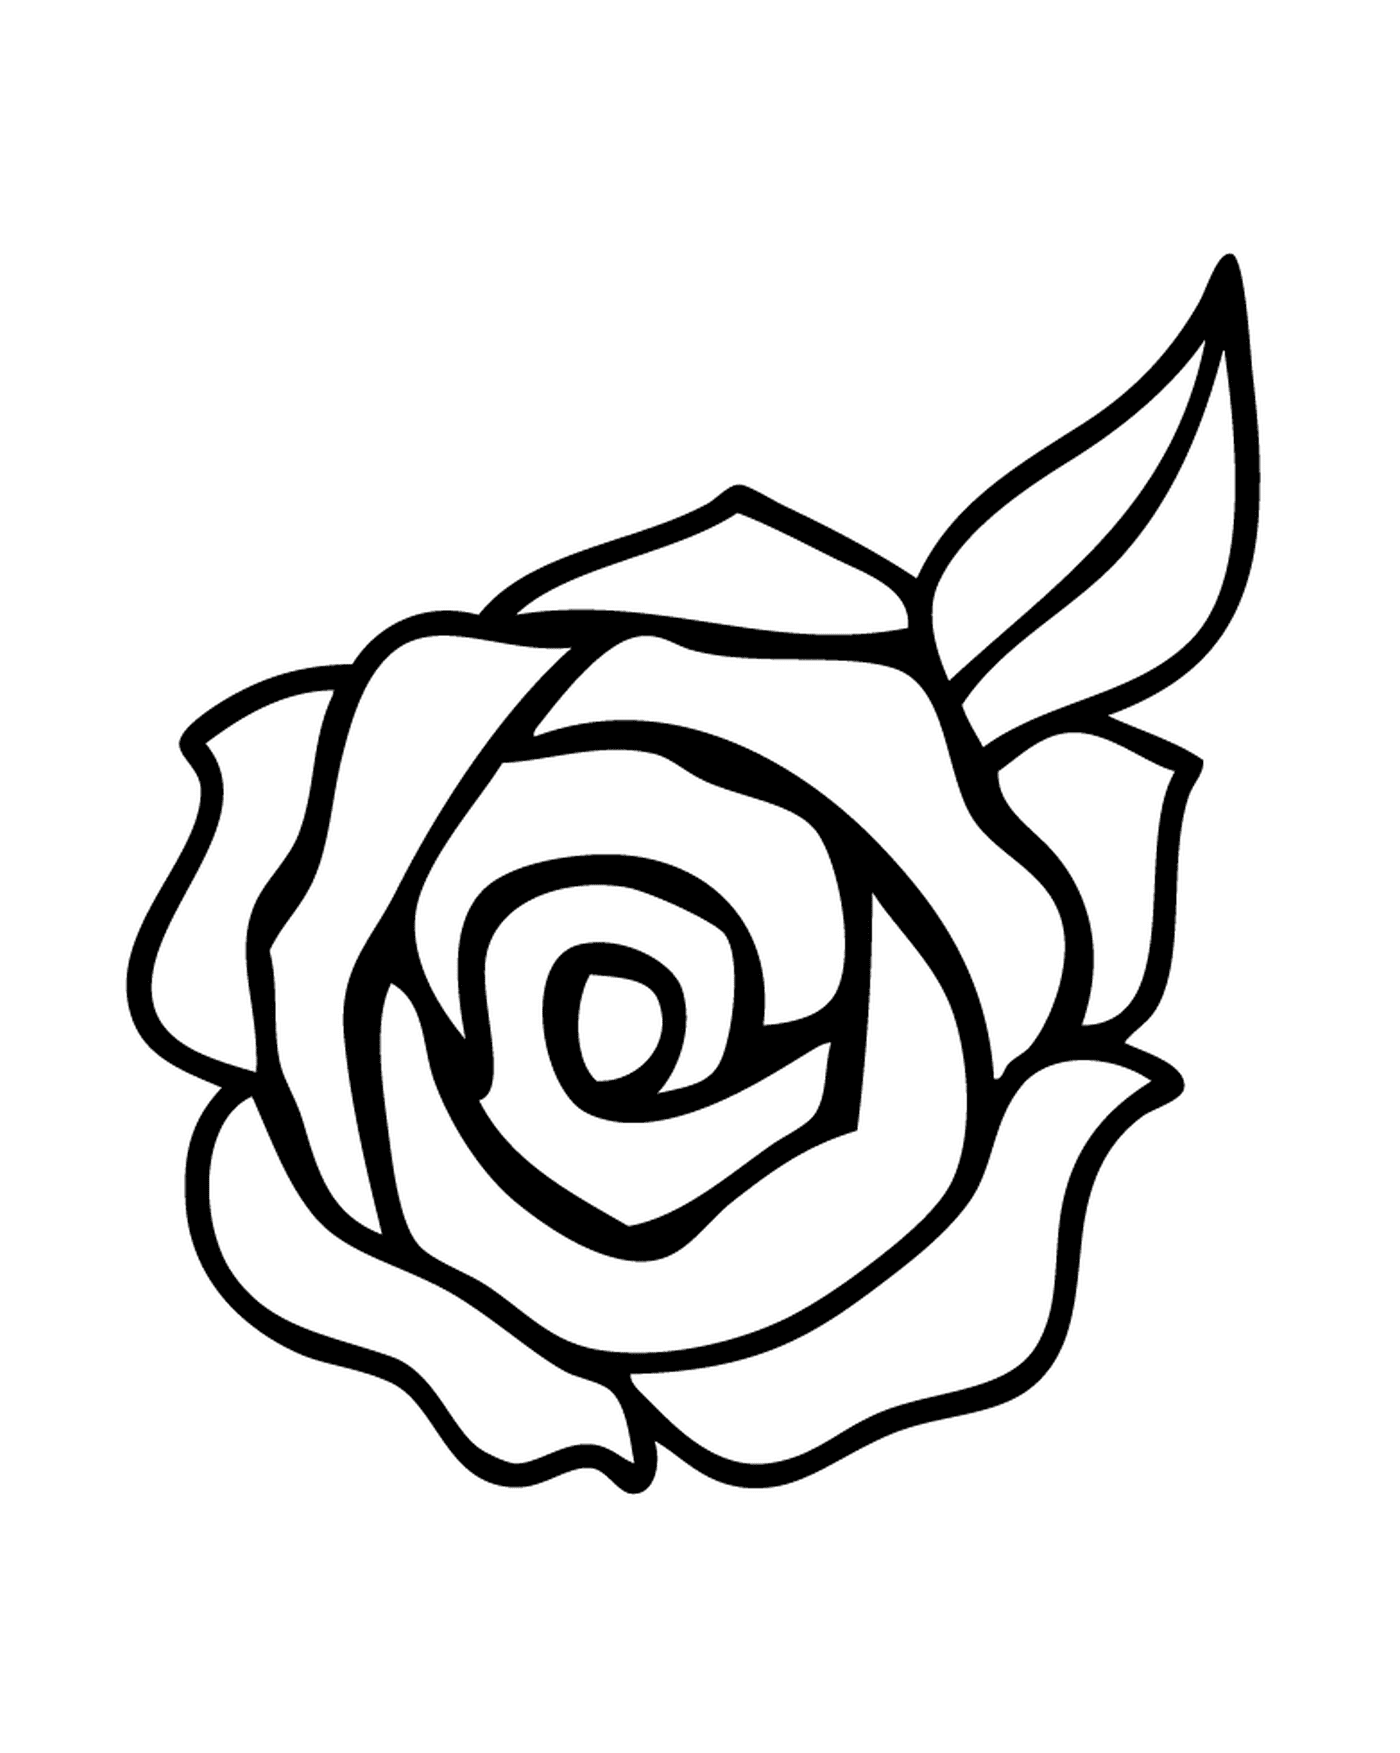  Elegant bouquet roses 